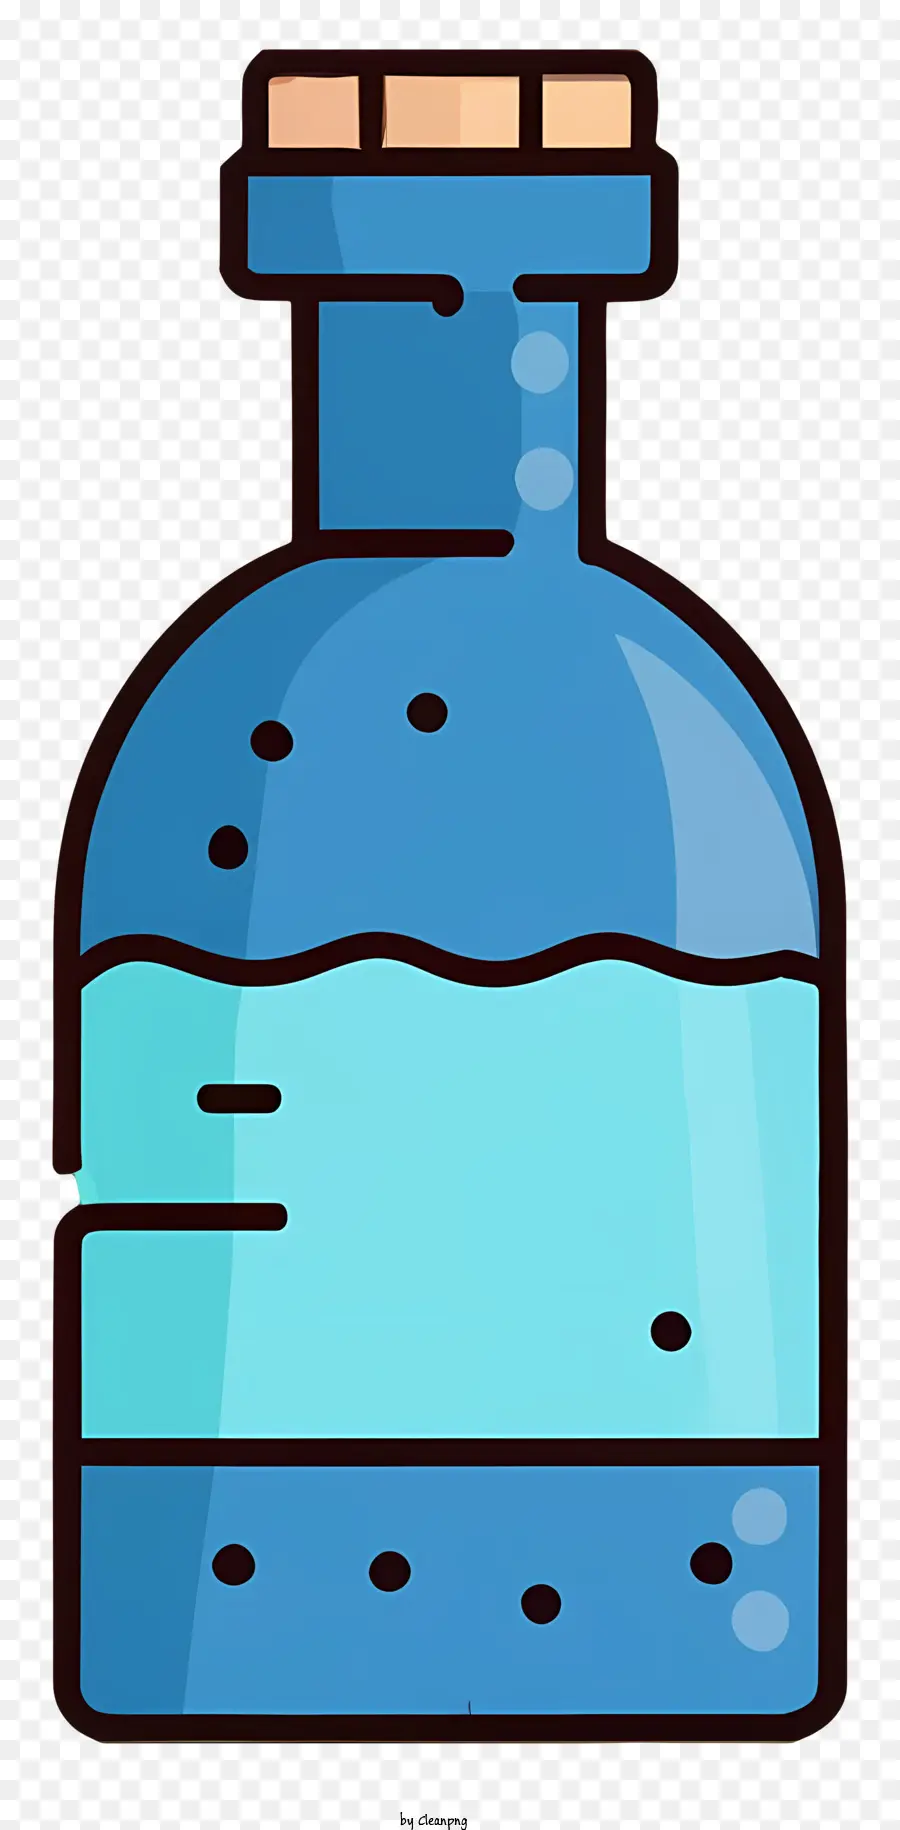 Chai thủy tinh màu xanh hoạt hình Chai chai chứa đầy nước nút chai phẳng - Chai thủy tinh màu xanh với nước, nút chai